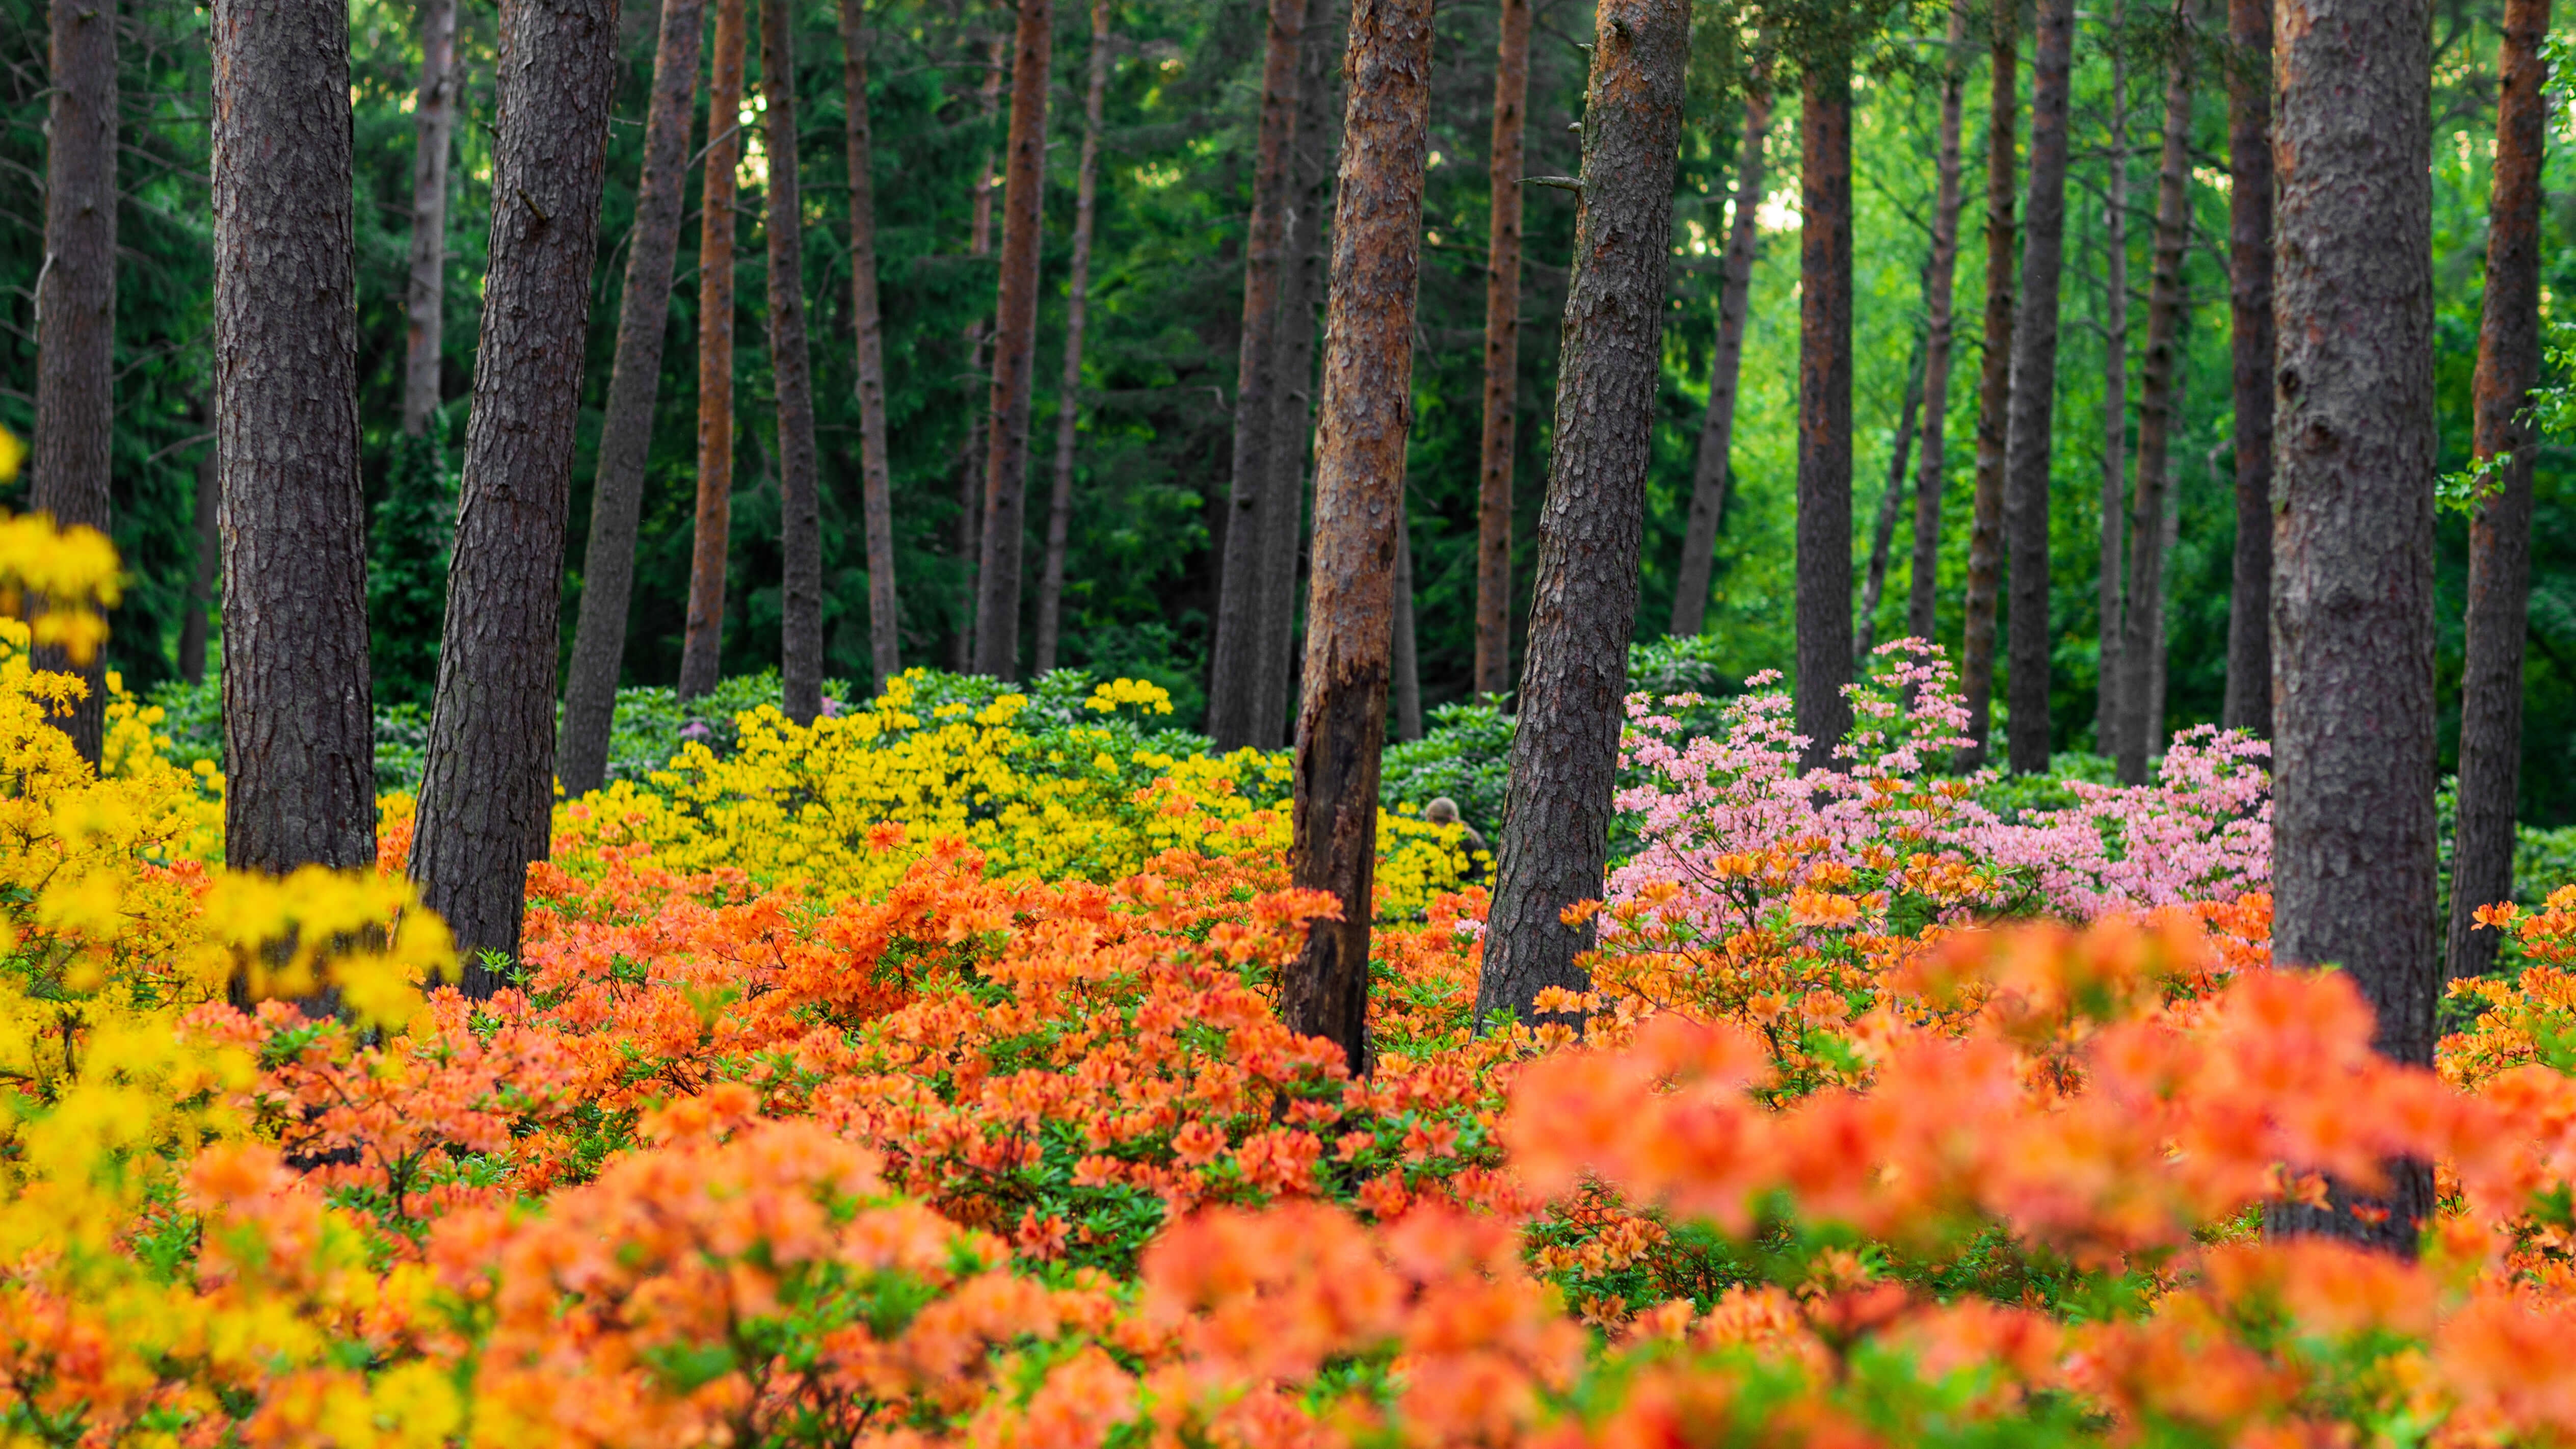 HD wallpaper, Haaga Rhododendron Park, Spring, Flower Garden, Colorful Flowers, Finland, Azalea Plants, 5K, Landscape